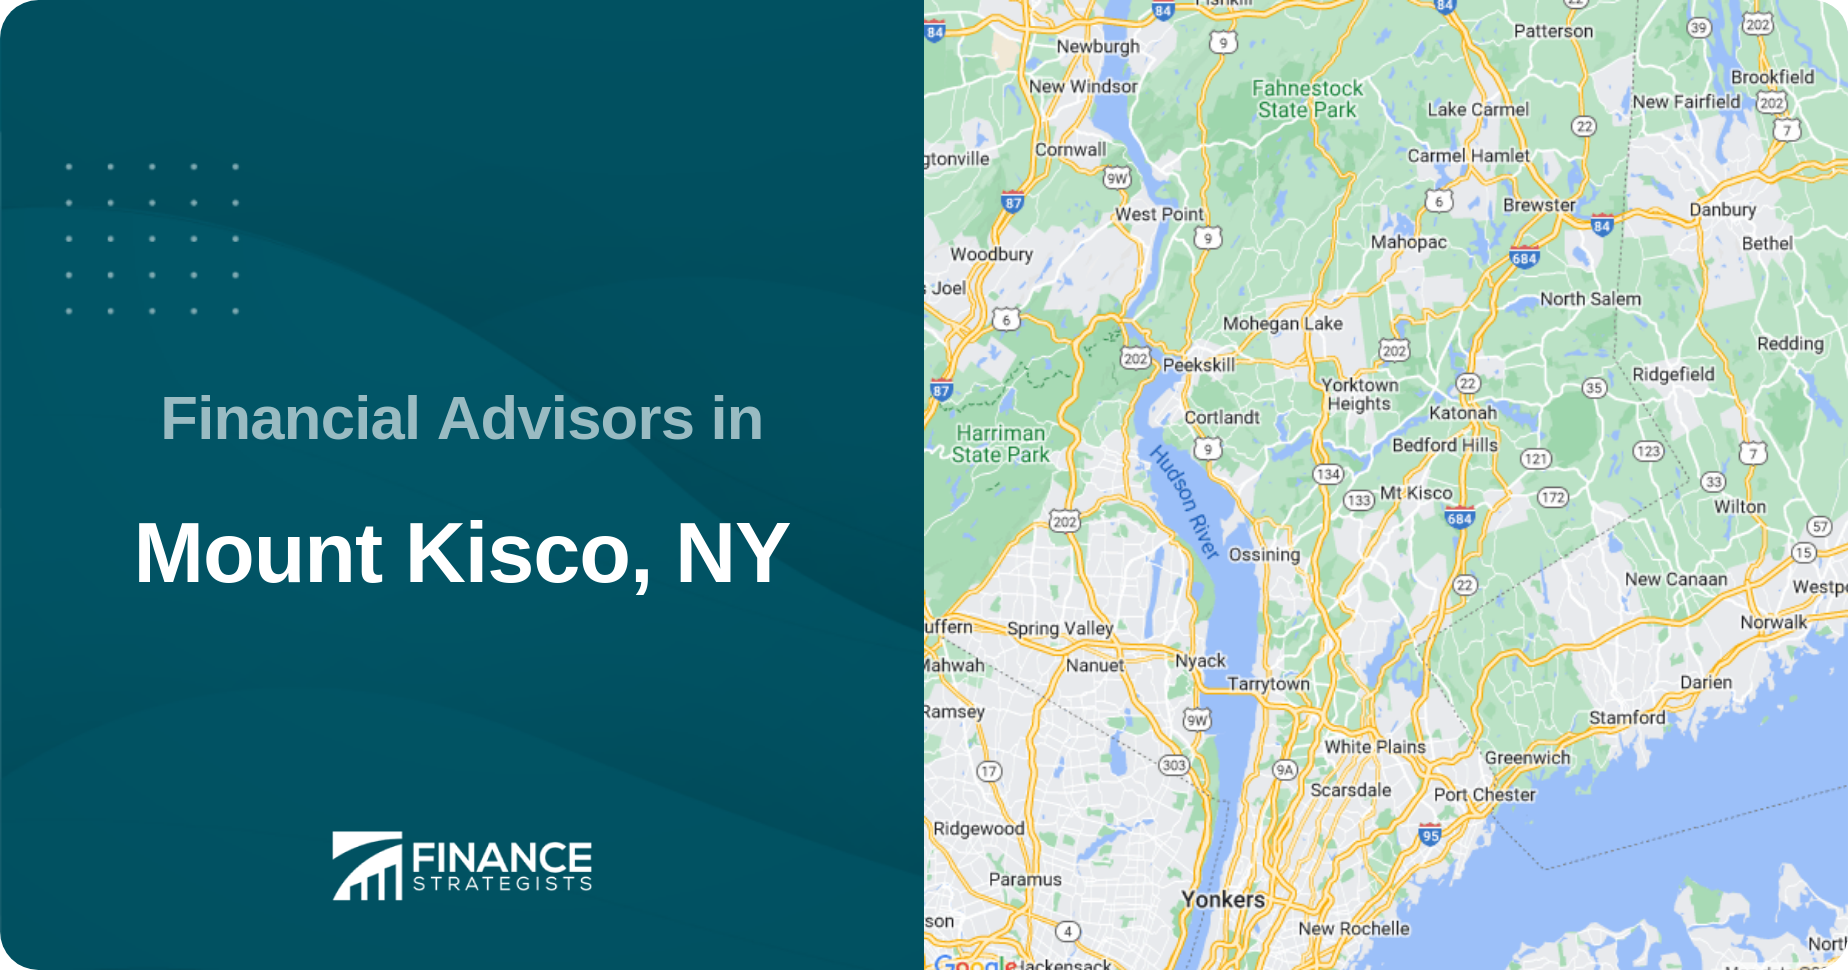 Financial Advisors in Mount Kisco, NY